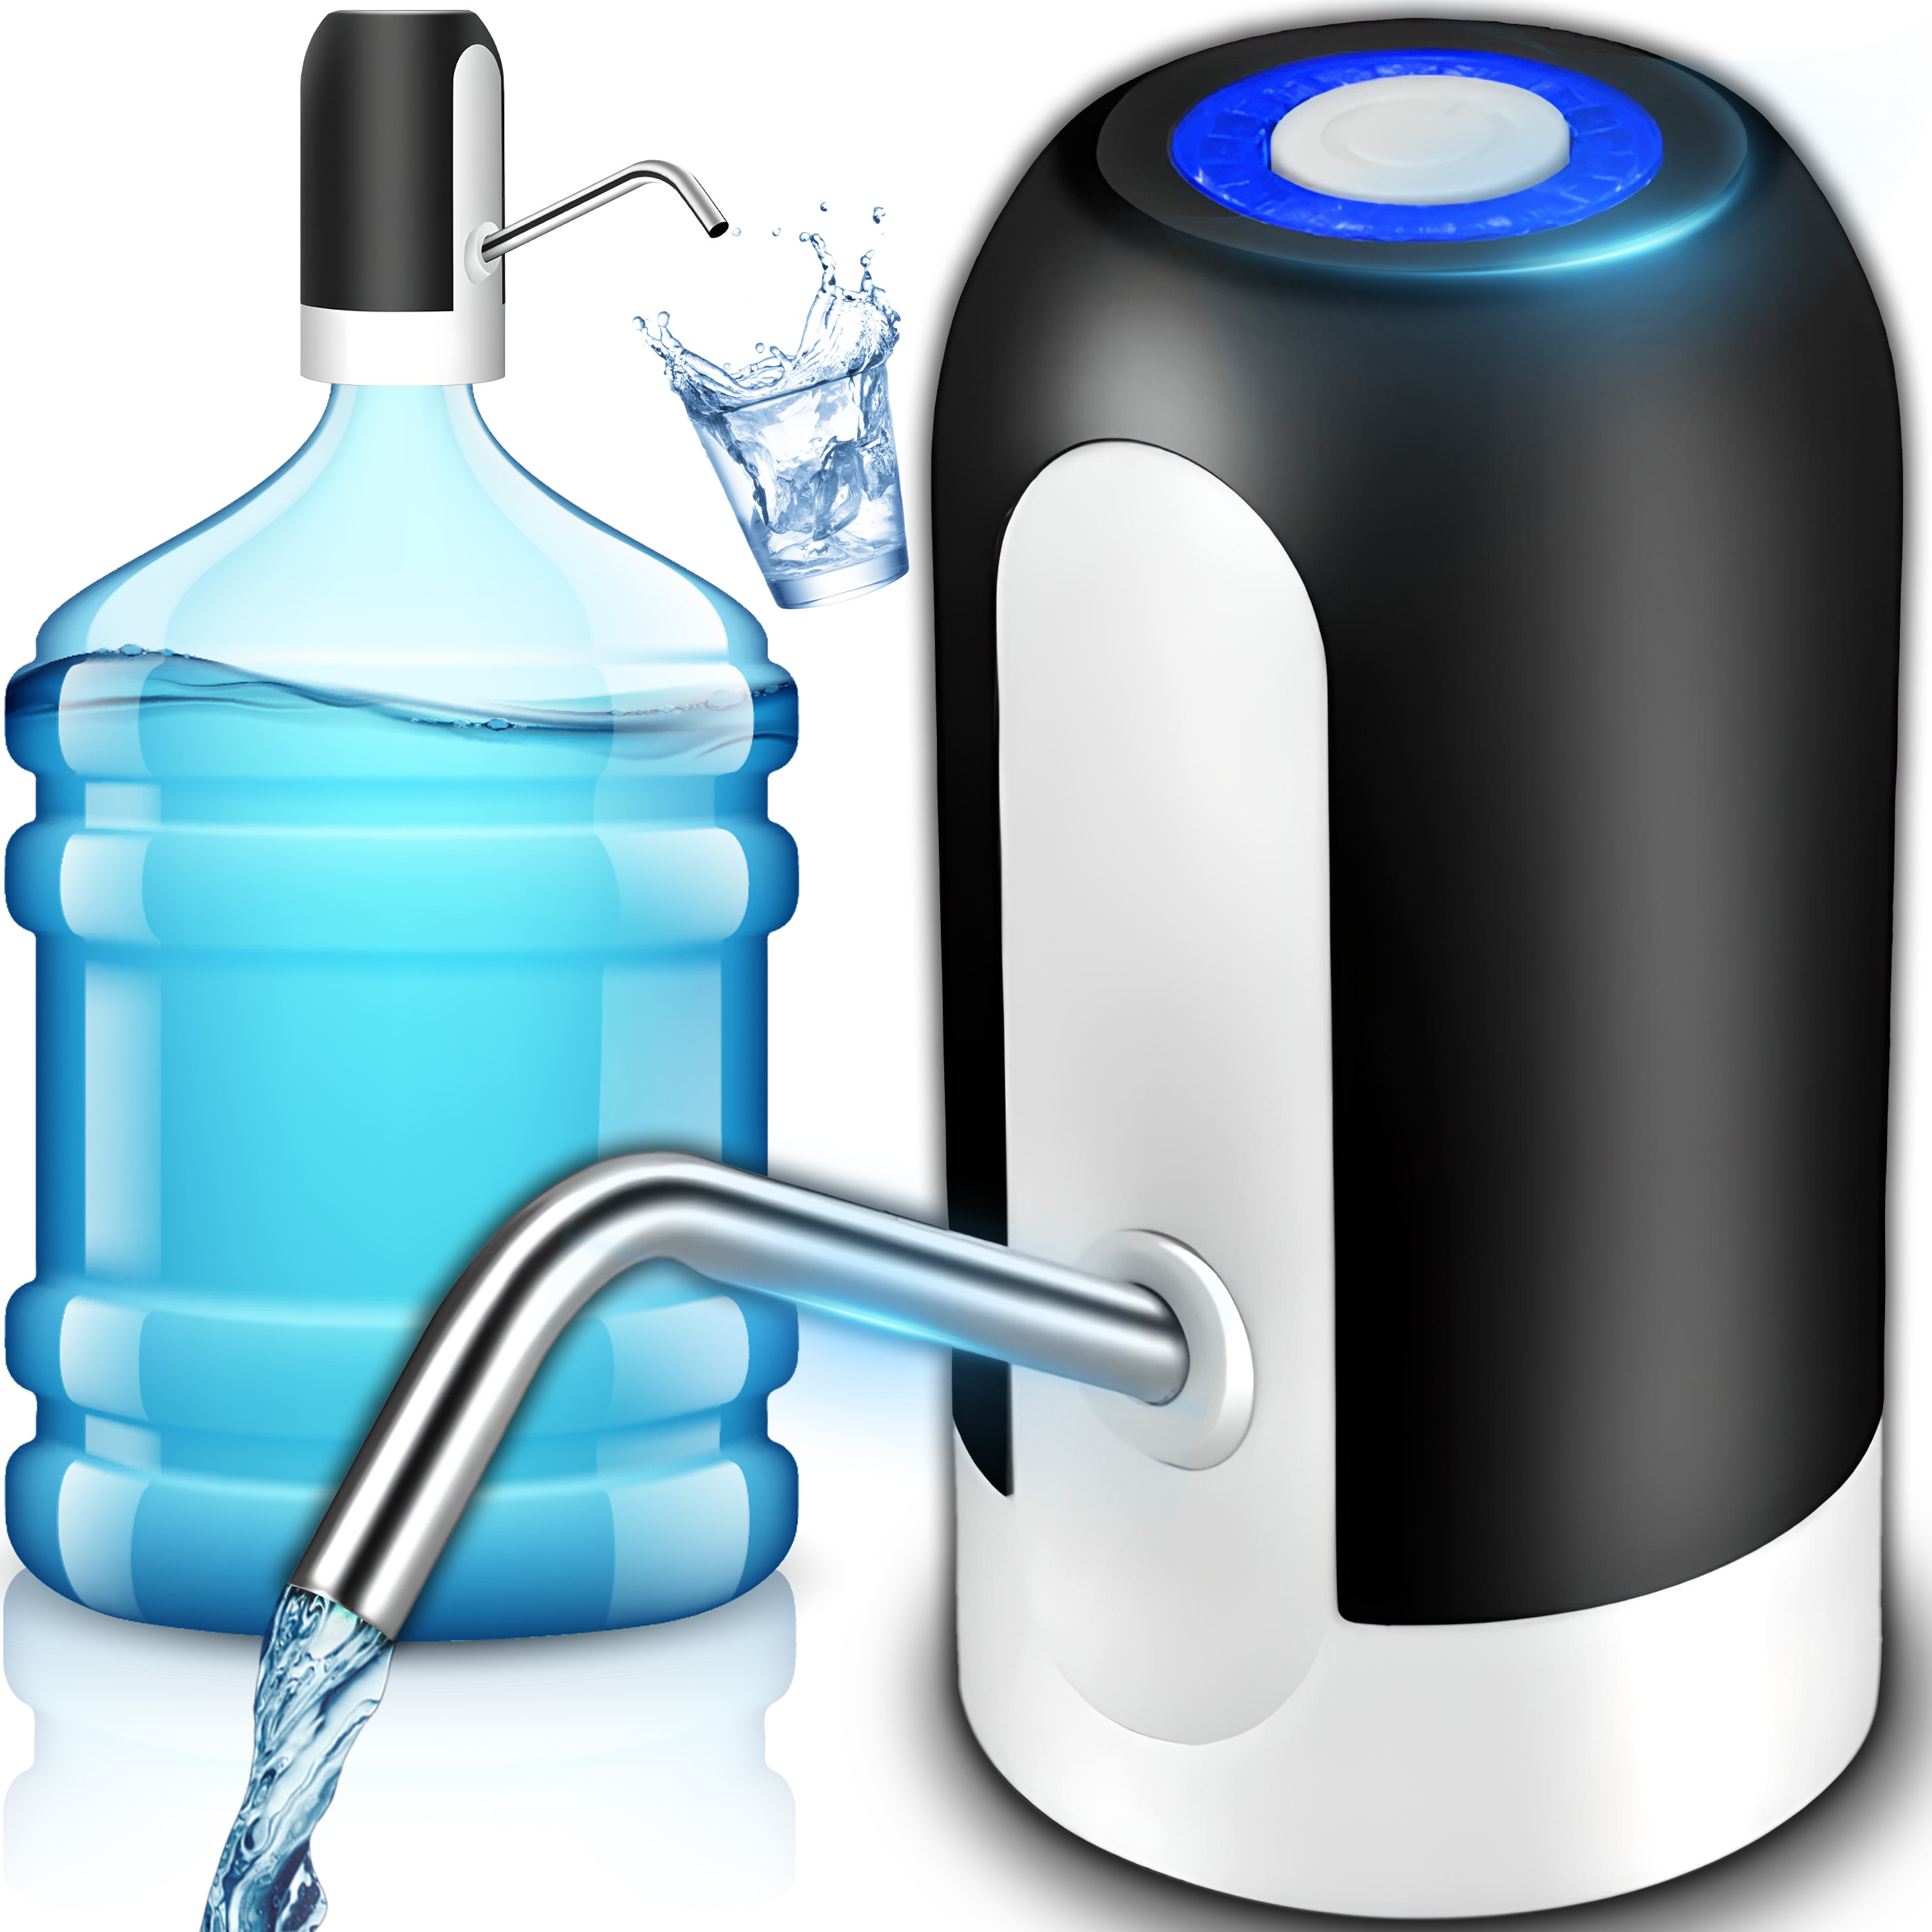 Intelligente Elektrische 5-gallonen-wasserflaschenpumpe